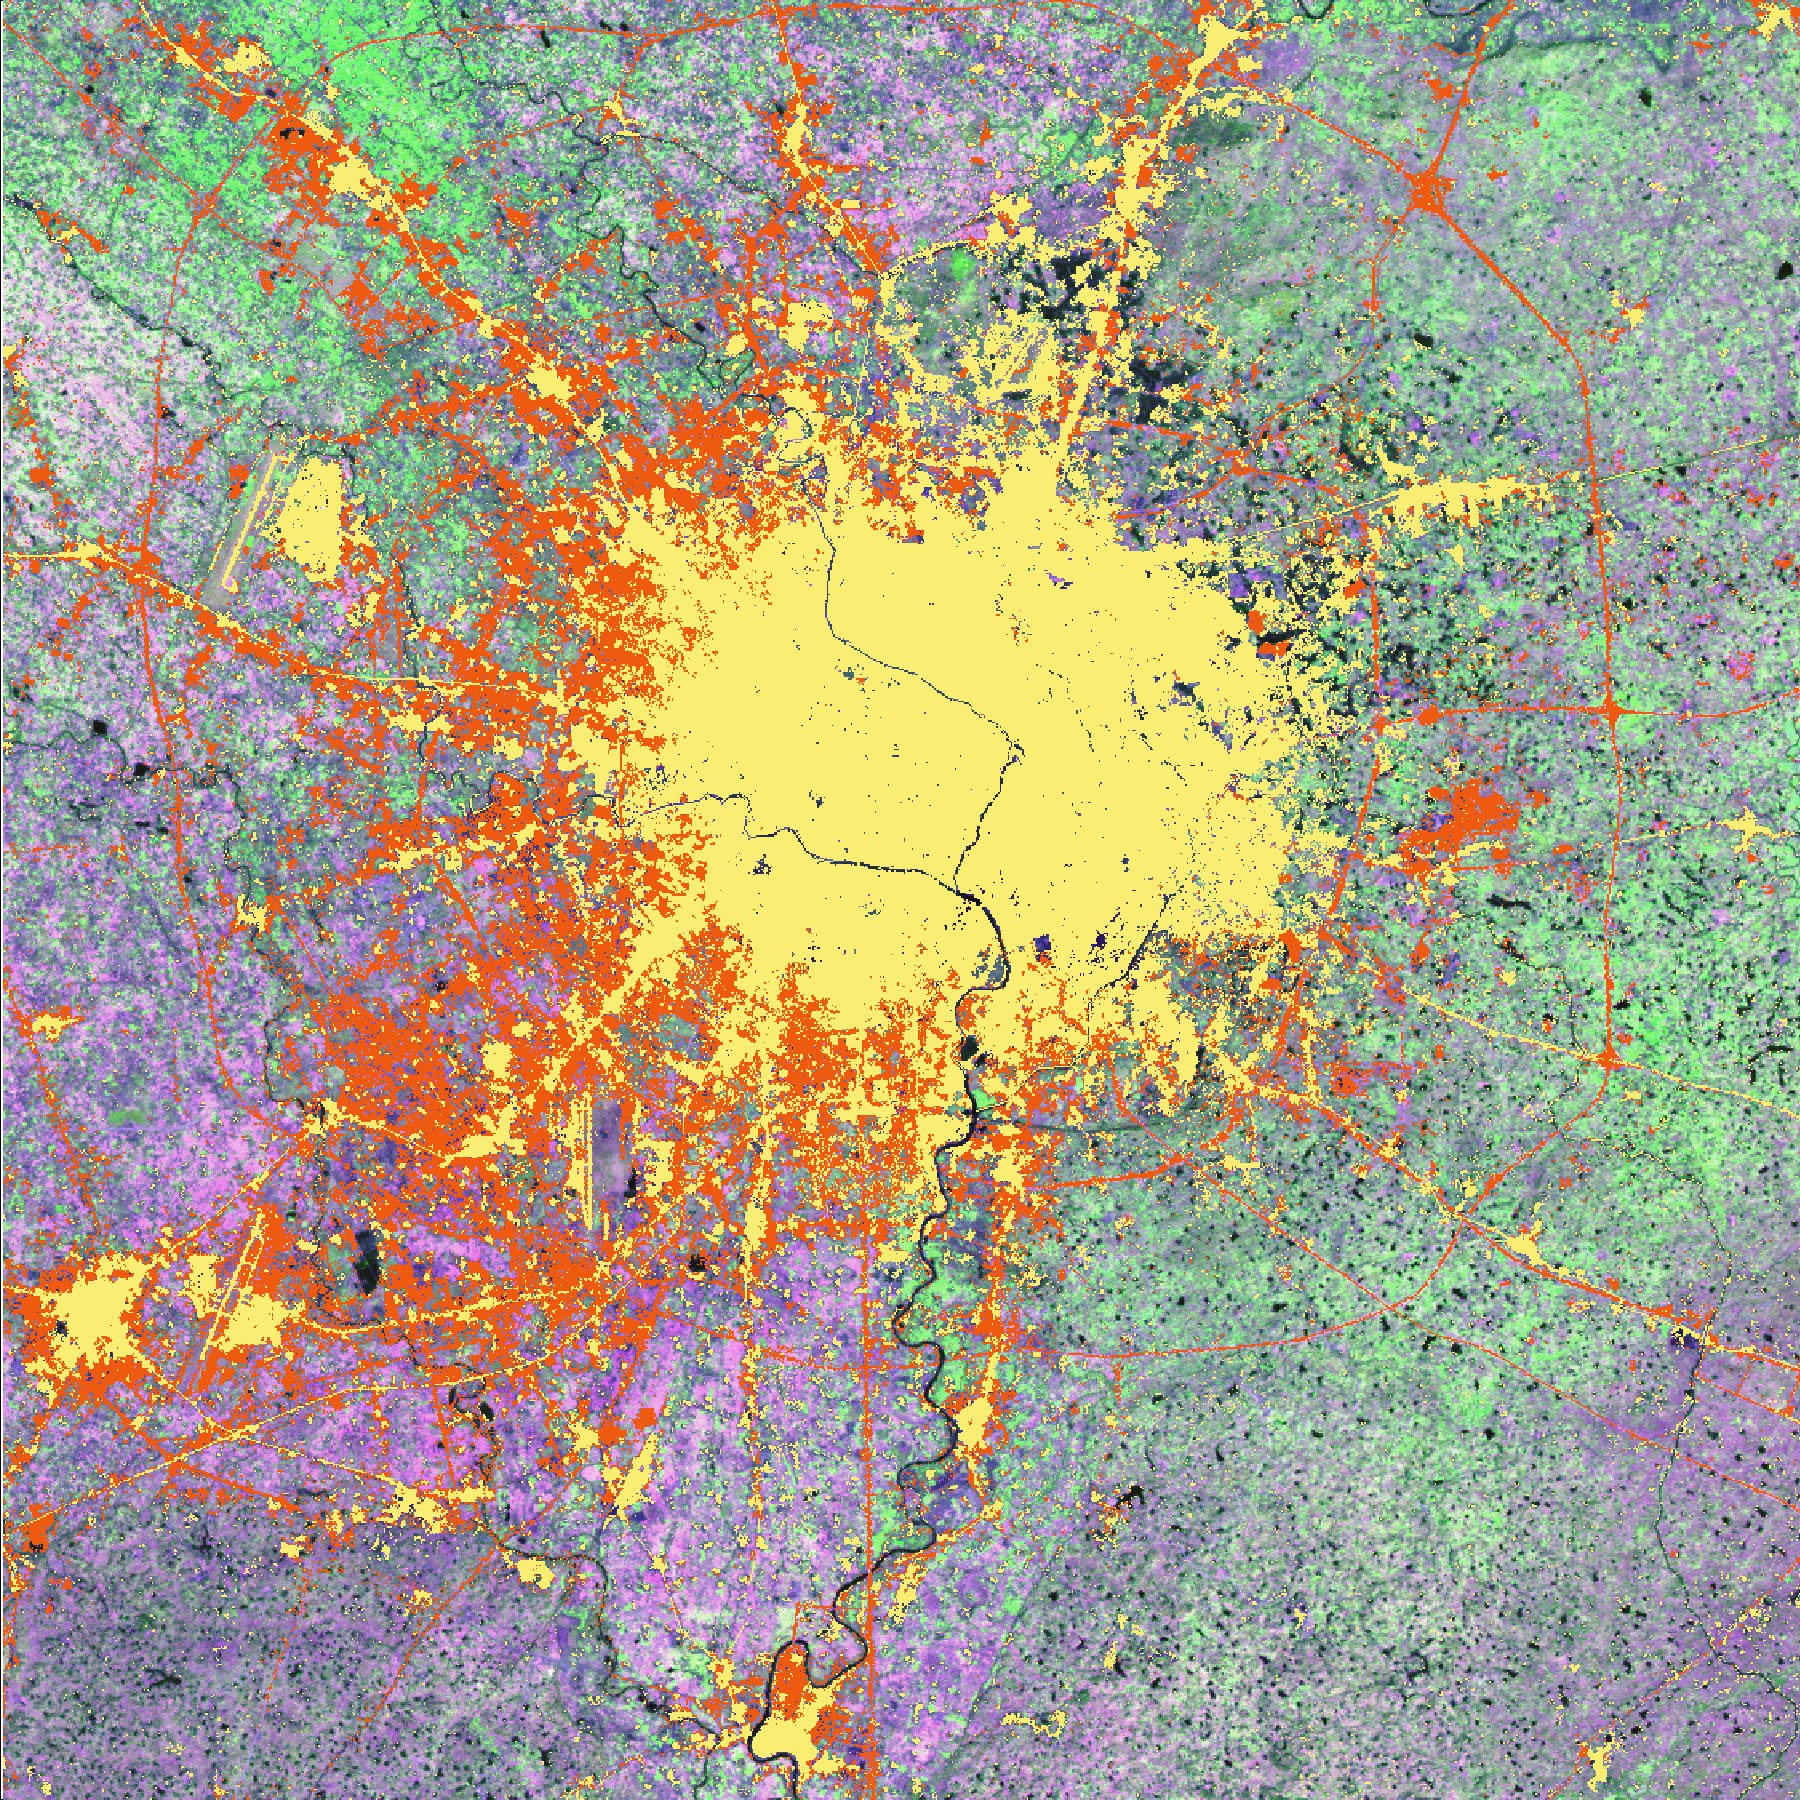 Bilaga 2 Chengdus urbana utbredning mellan 1990-2000, det orangea fälten markerar